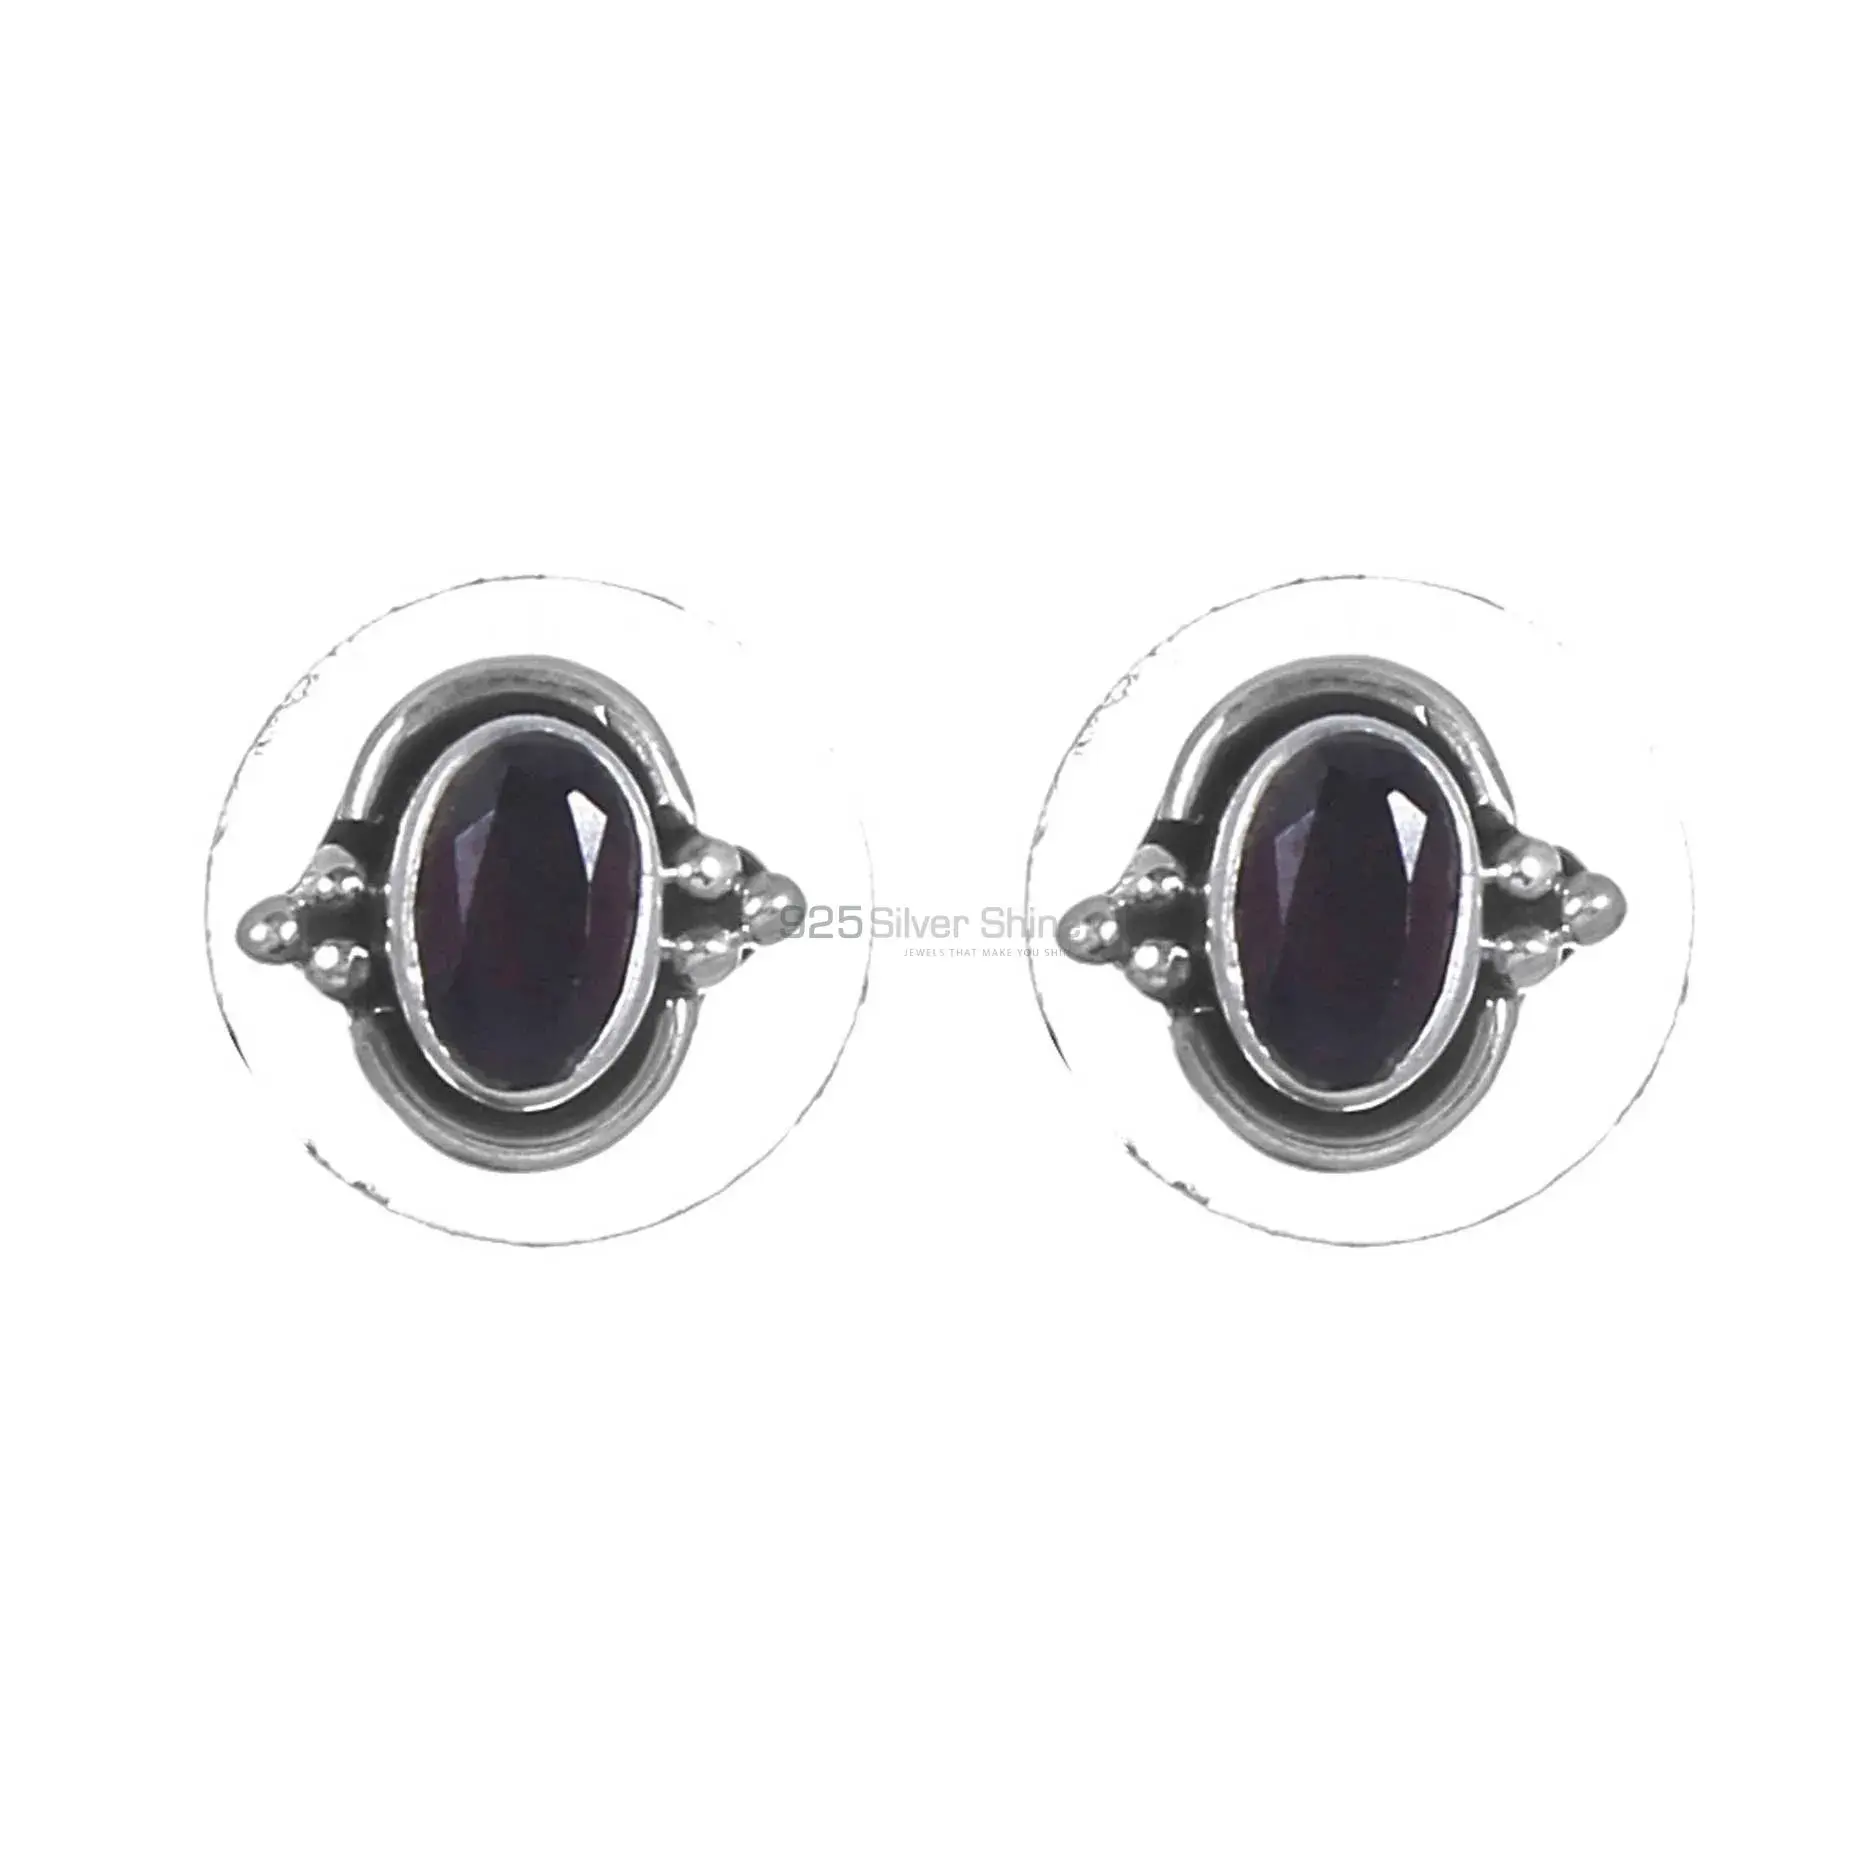 Best Quality 925 Sterling Silver Handmade Earrings In Black Onyx Gemstone Jewelry 925SE268